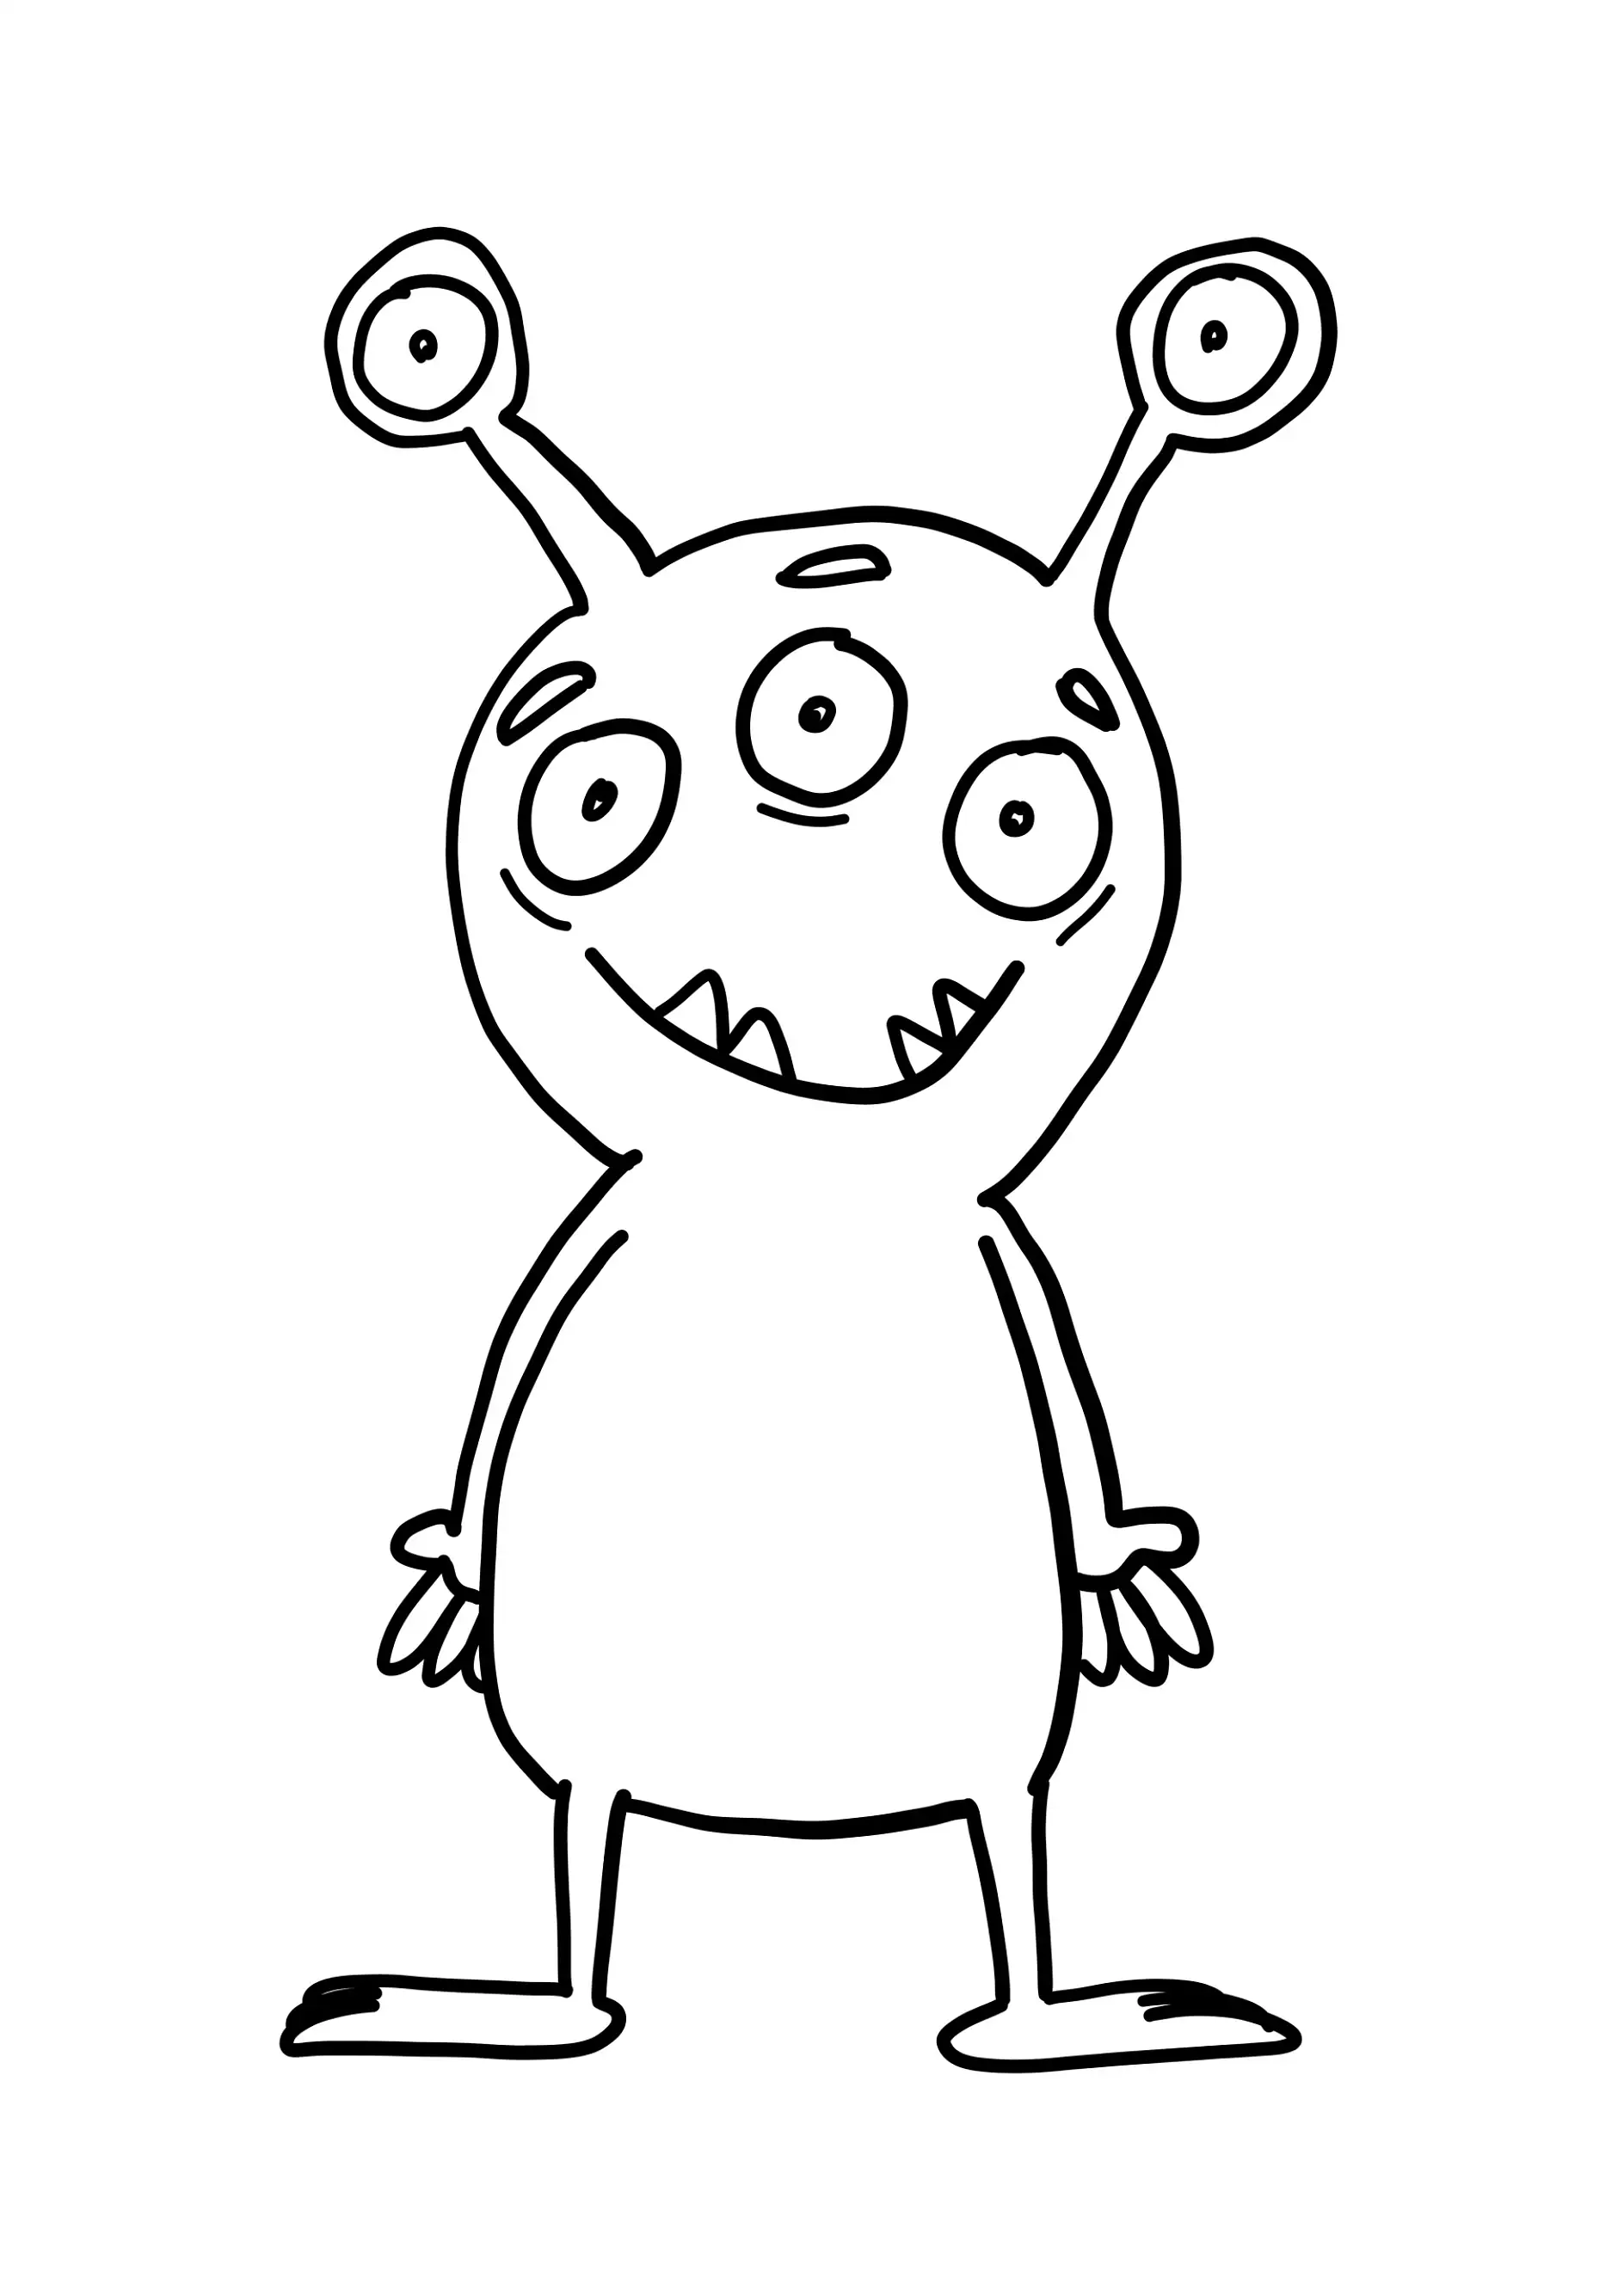 Ausmalbild Monster mit drei Augen und Antennen